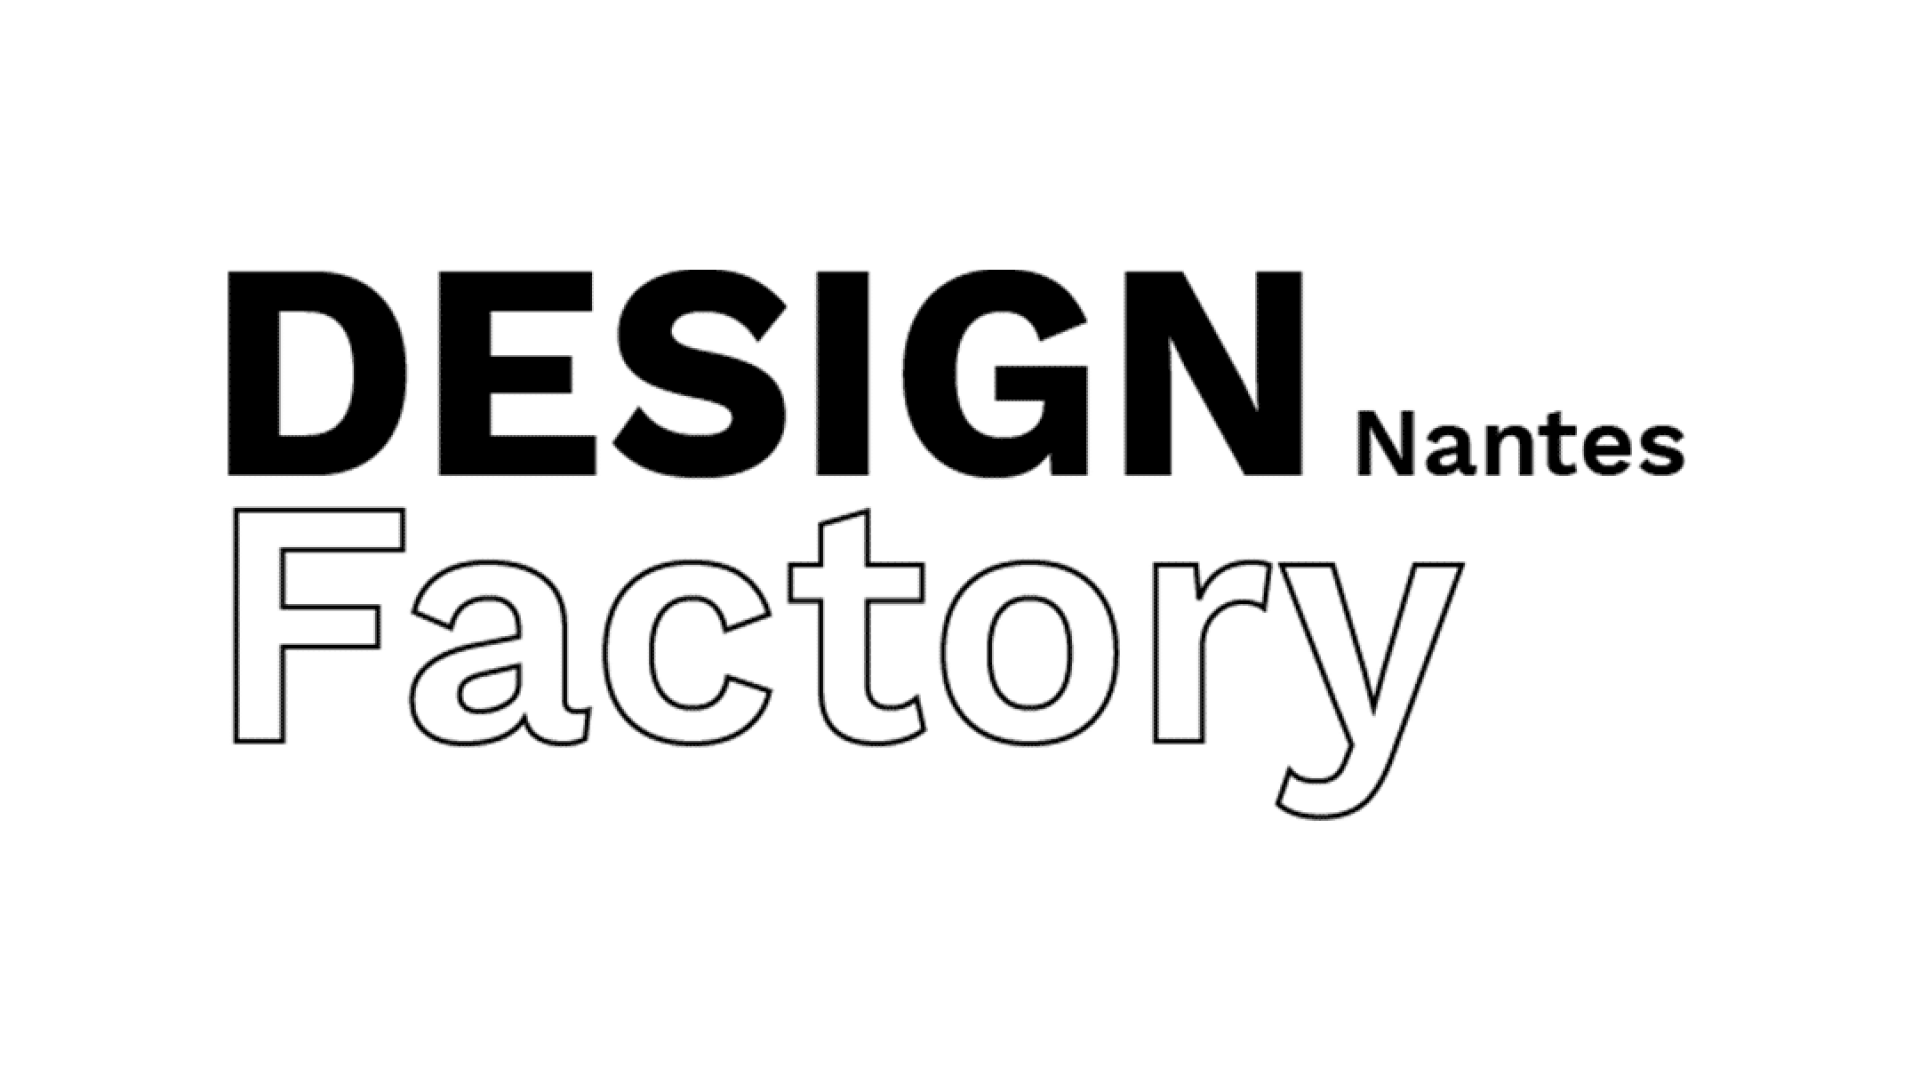 Design Factory Nantes